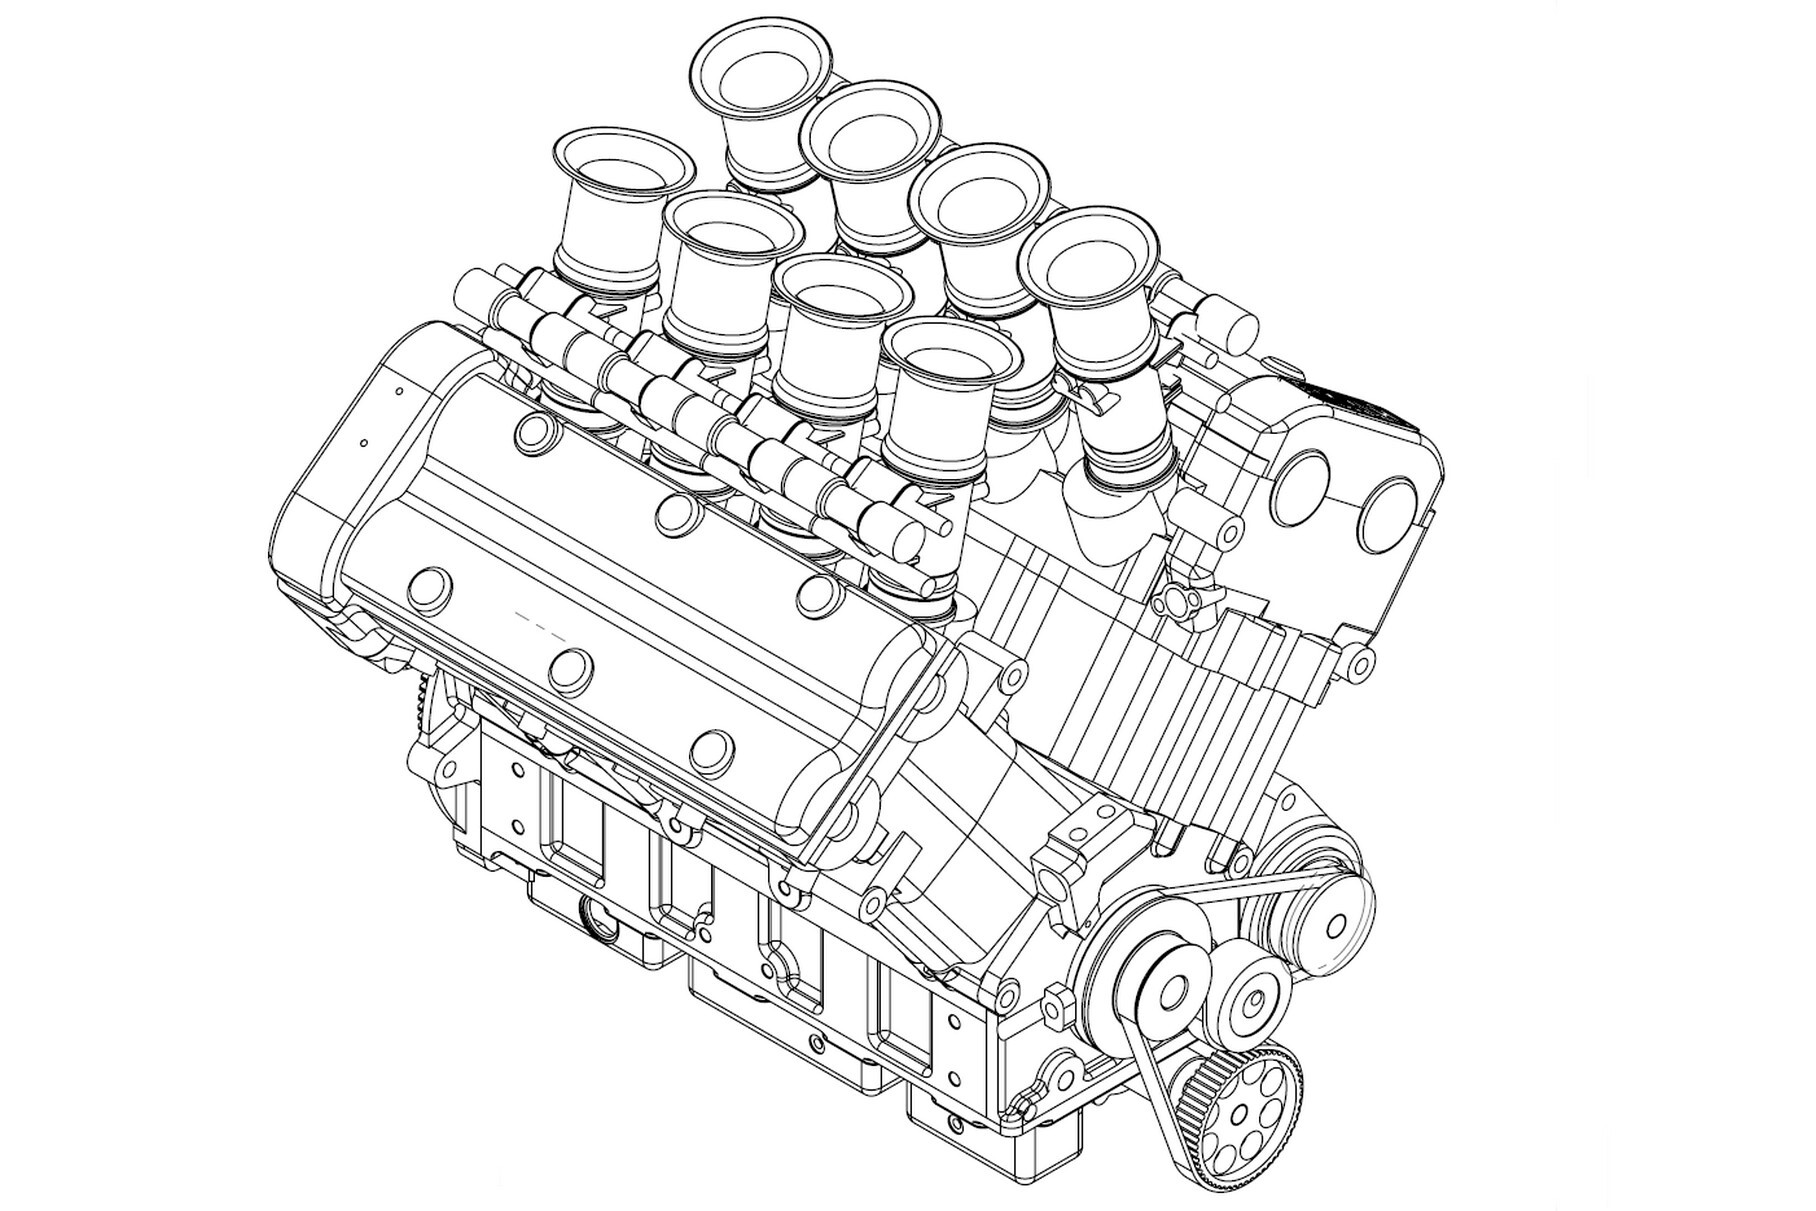 Ранний вариант двигателя Джона Хартли c 75-градусным развалом